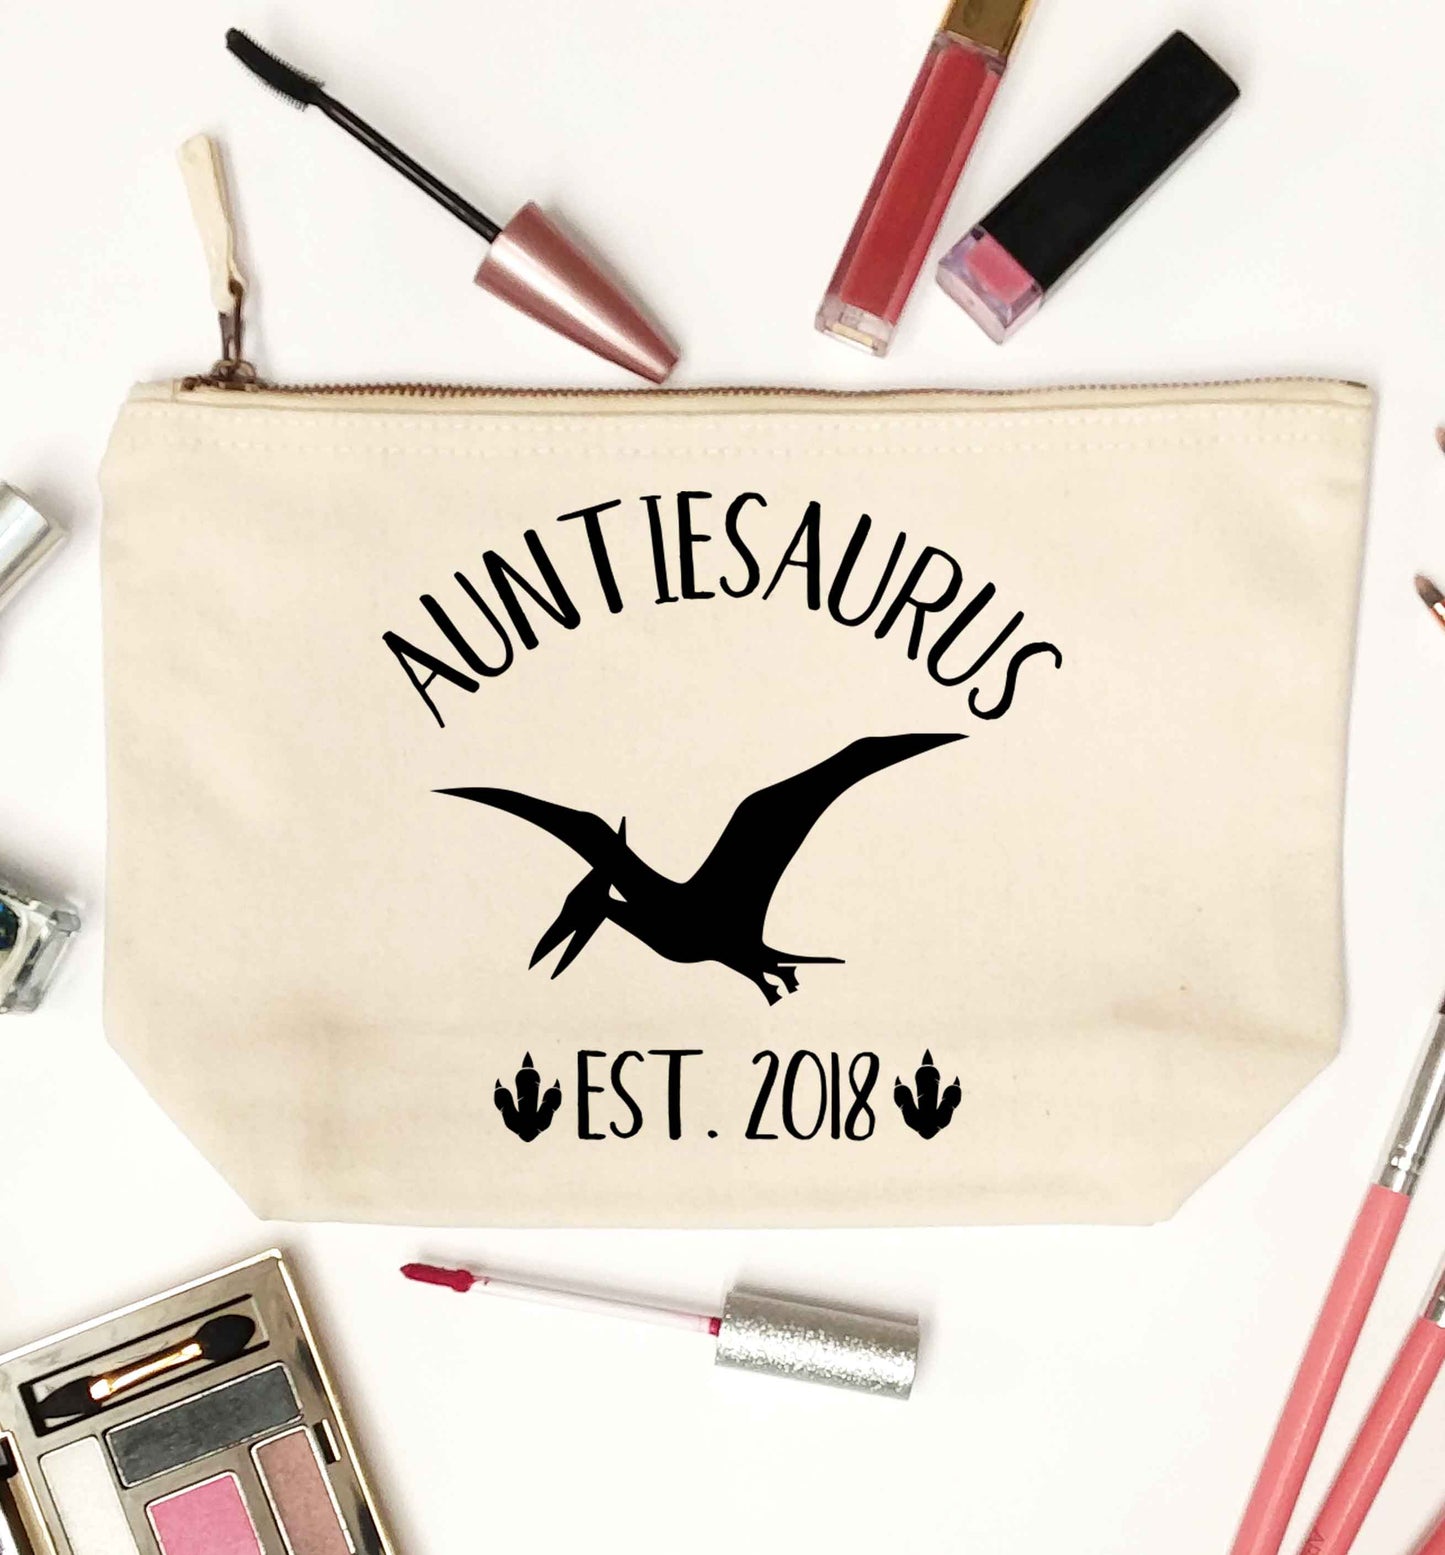 Personalised auntiesaurus since (custom date) natural makeup bag